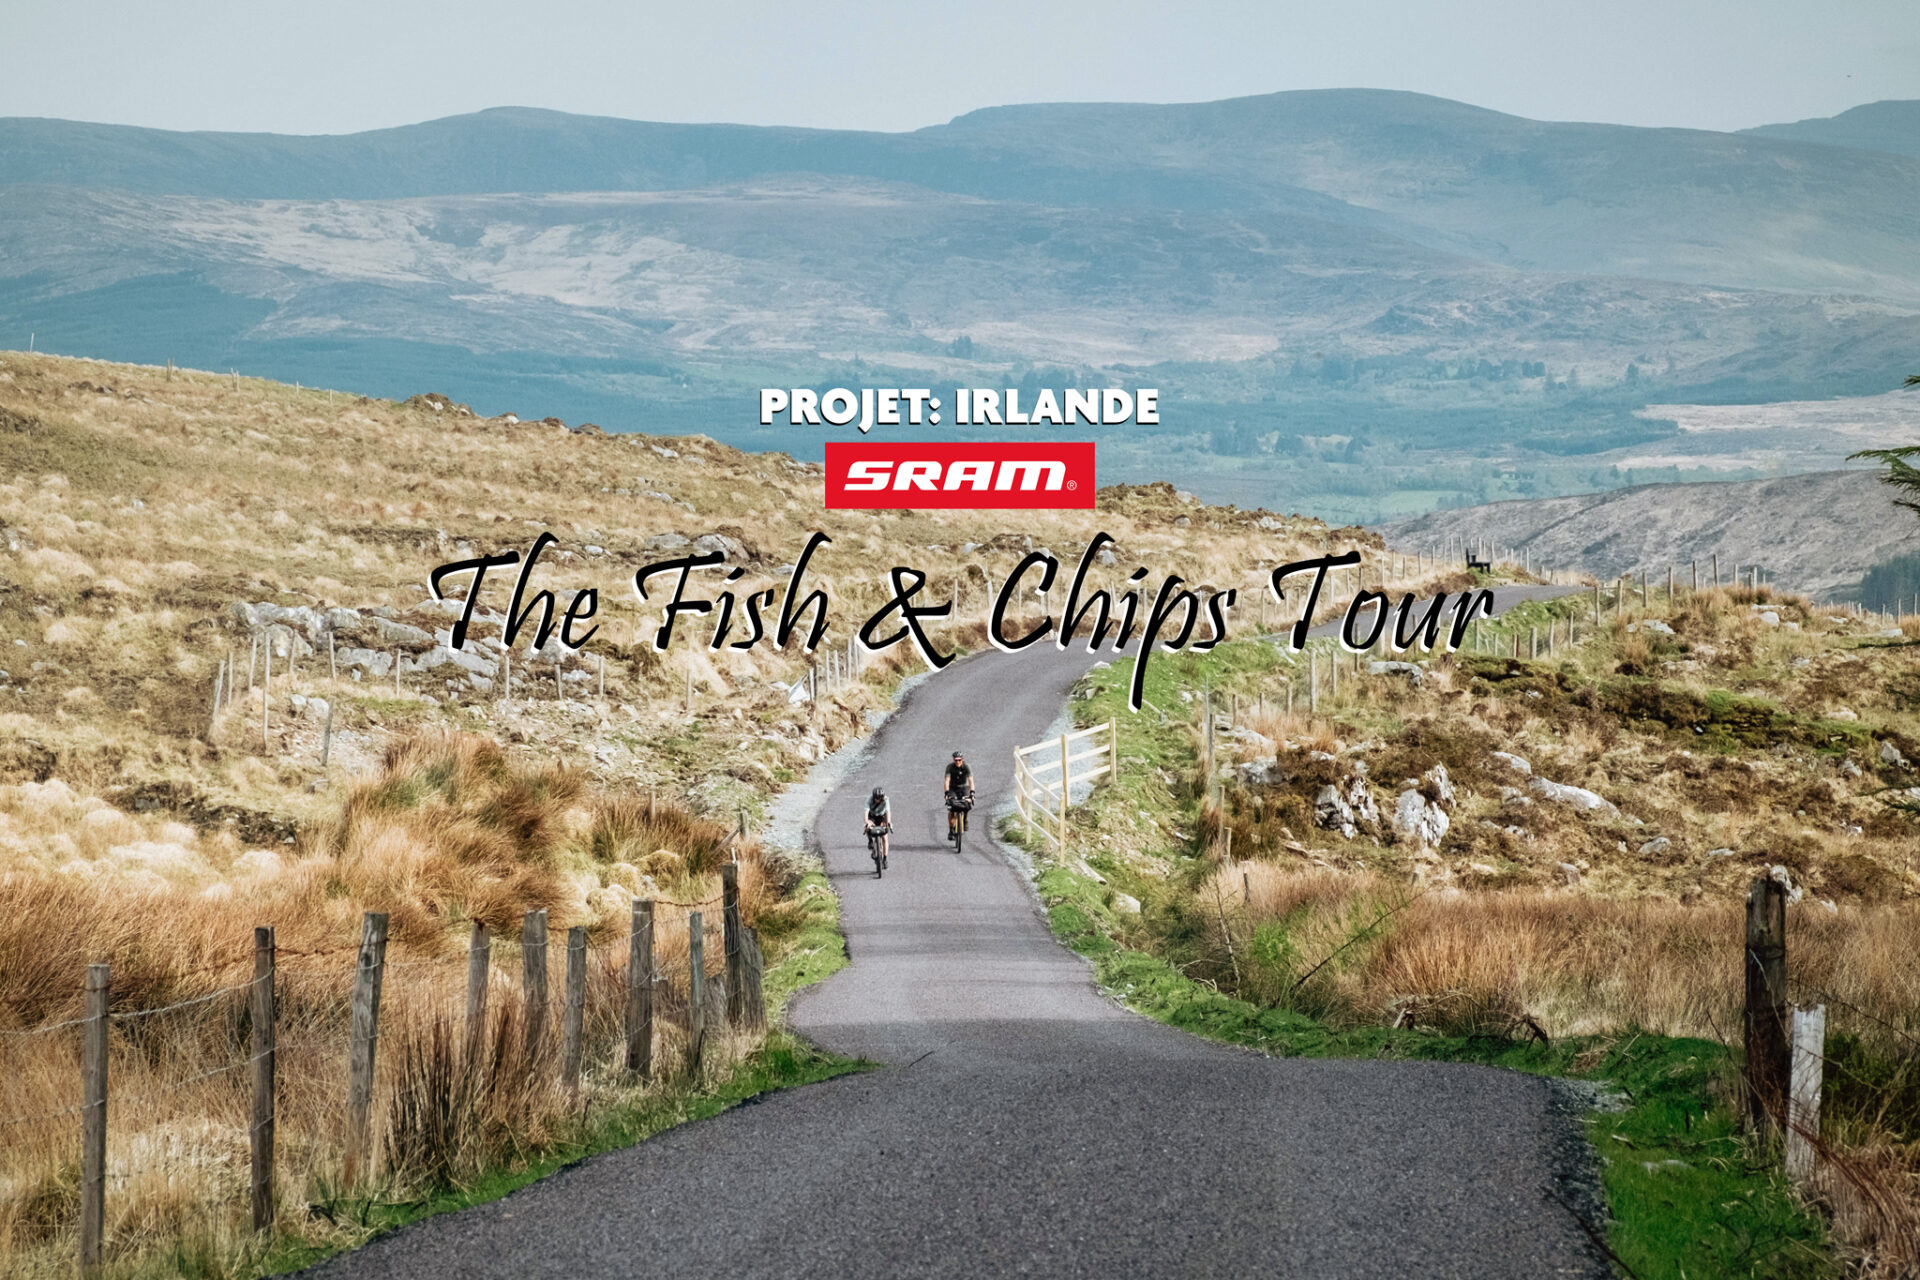 Itinérance vélo gravel en Irlande ─ “The Fish & Chips Tour” Épisode #2, avec SRAM